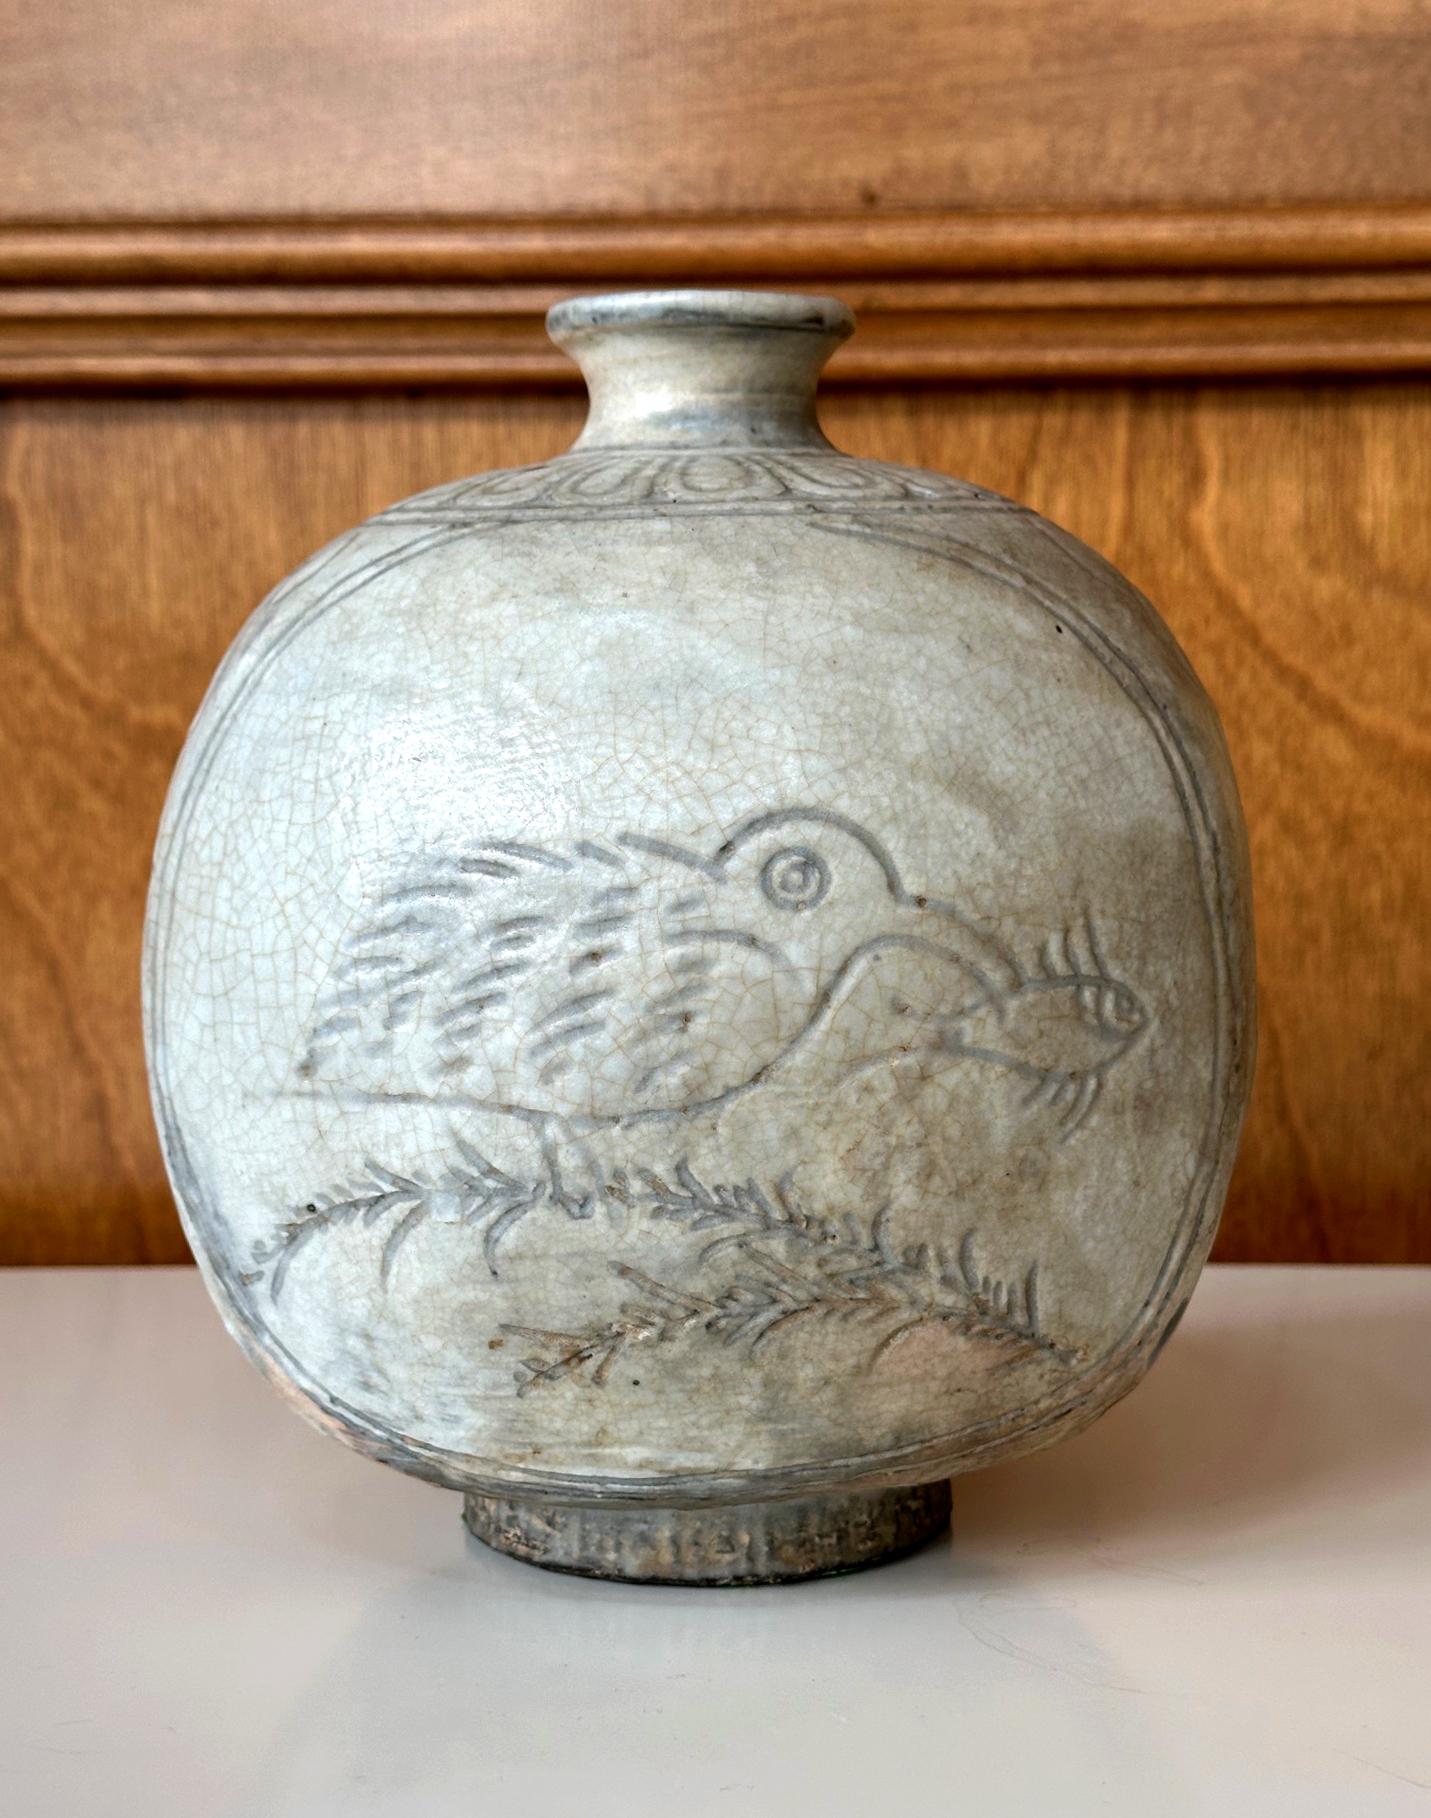 Eine koreanische Buncheong-Steinzeugvase aus der Joseon-Dynastie, circa 15. Jahrhundert. Die robuste, dickwandige Vase wurde in einer Flaschenform mit abgerundetem, quadratischem Umriss und abgeflachten Flächen hergestellt. Sie wurde als